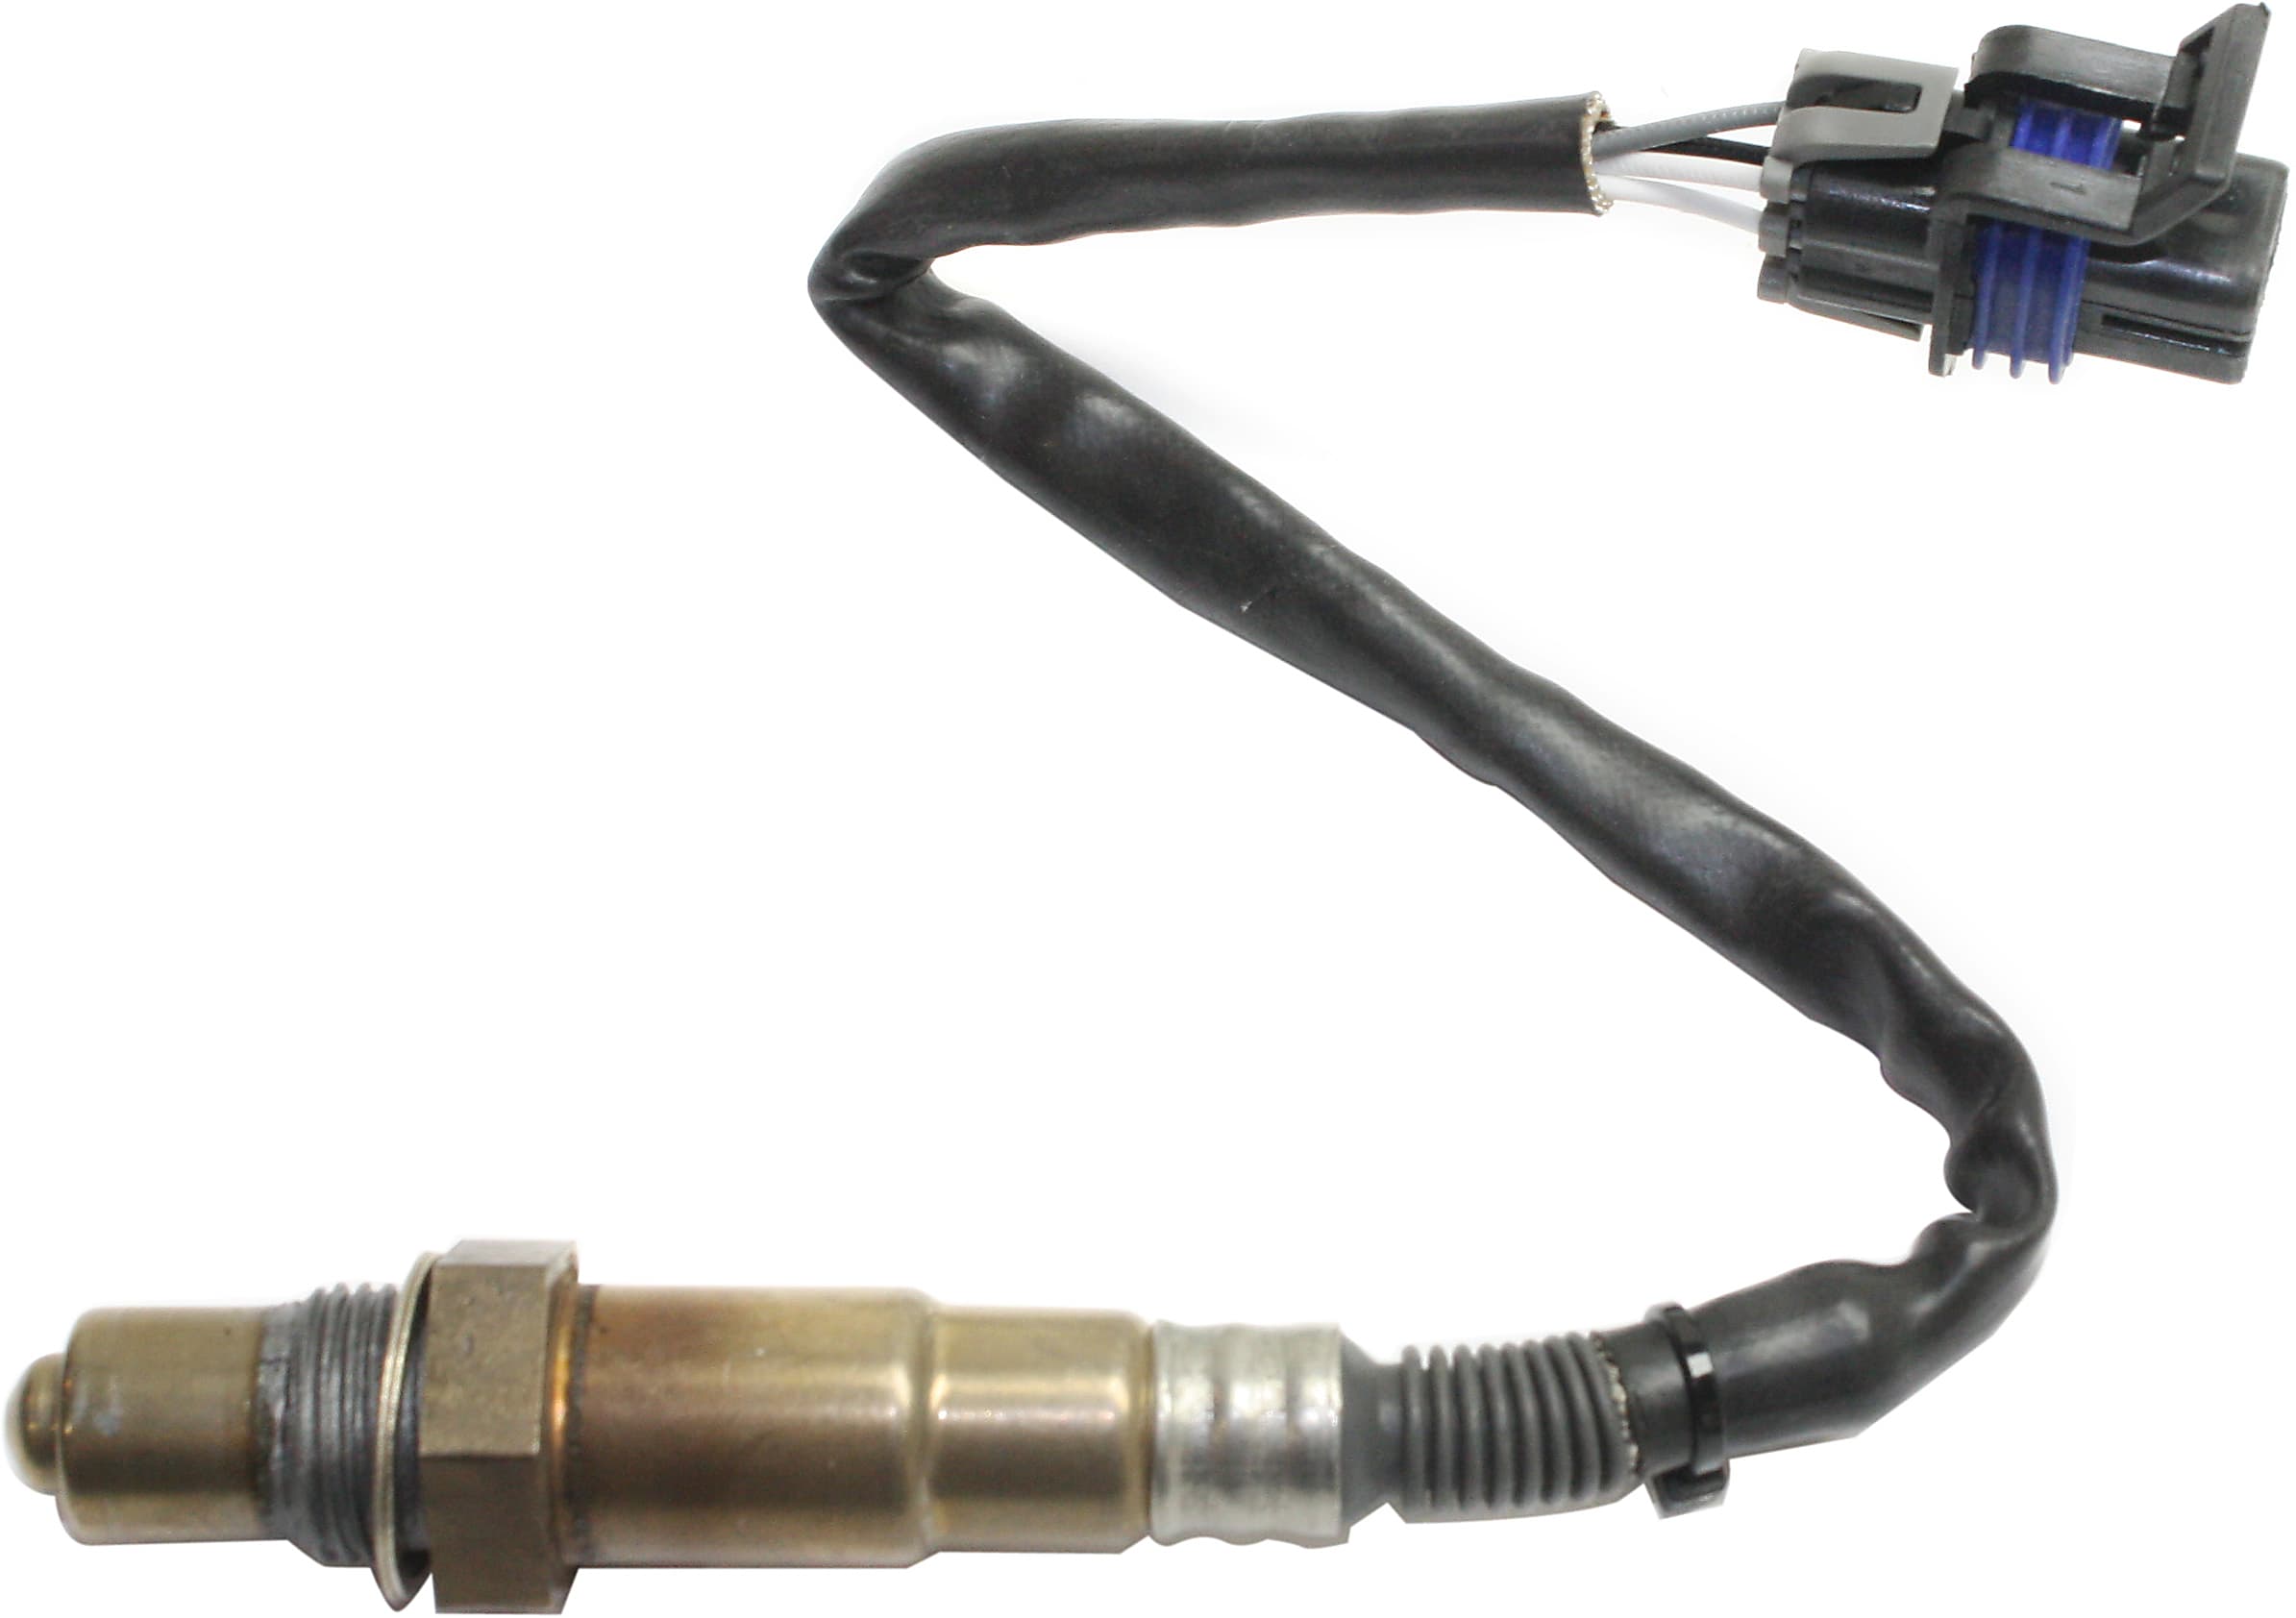 wires 4 Rear O2 sensor GoSens 110 Oxygen Sensor for Cadillac for Chevrolet for Pontiac OE# 19178928,250-24087,0258005738 length 450mm 1996-2002 